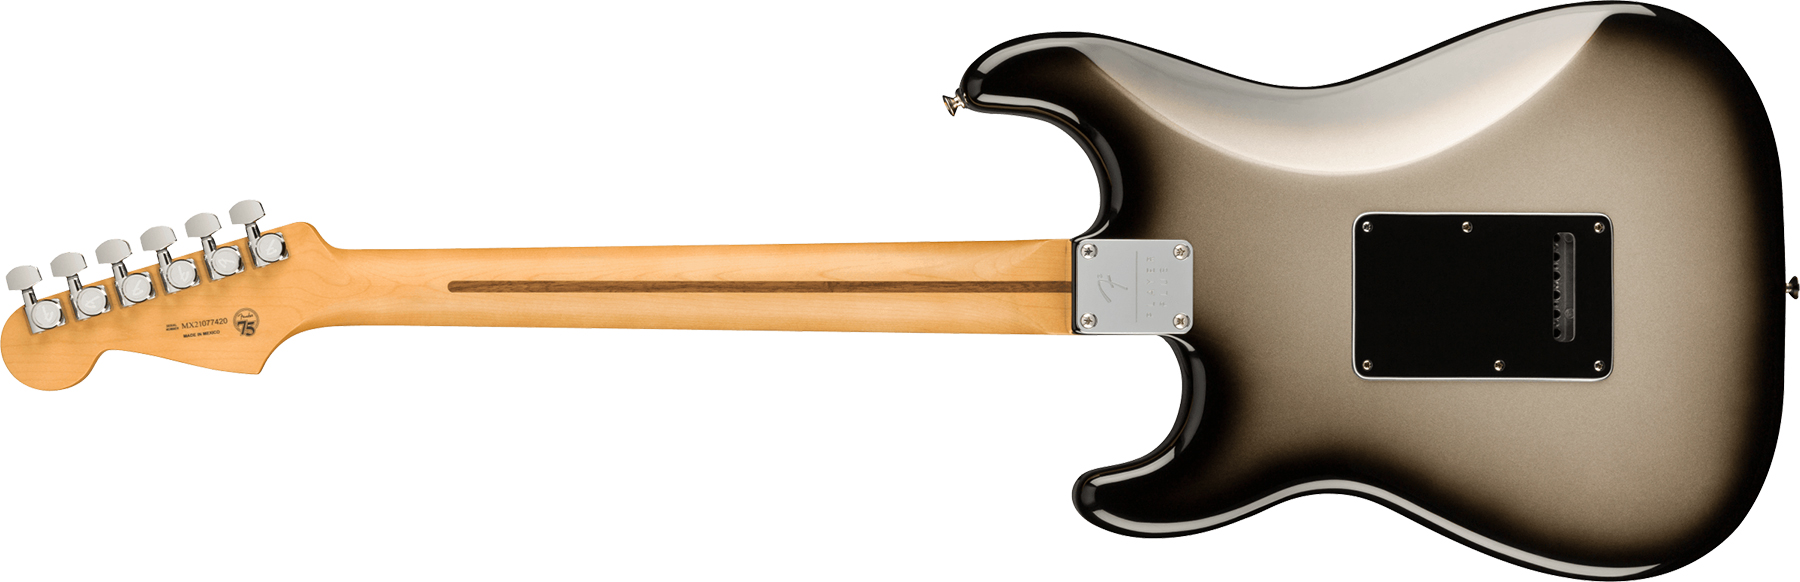 Fender Strat Player Plus Mex Hss Trem Pf - Silverburst - Guitare Électrique Forme Str - Variation 1